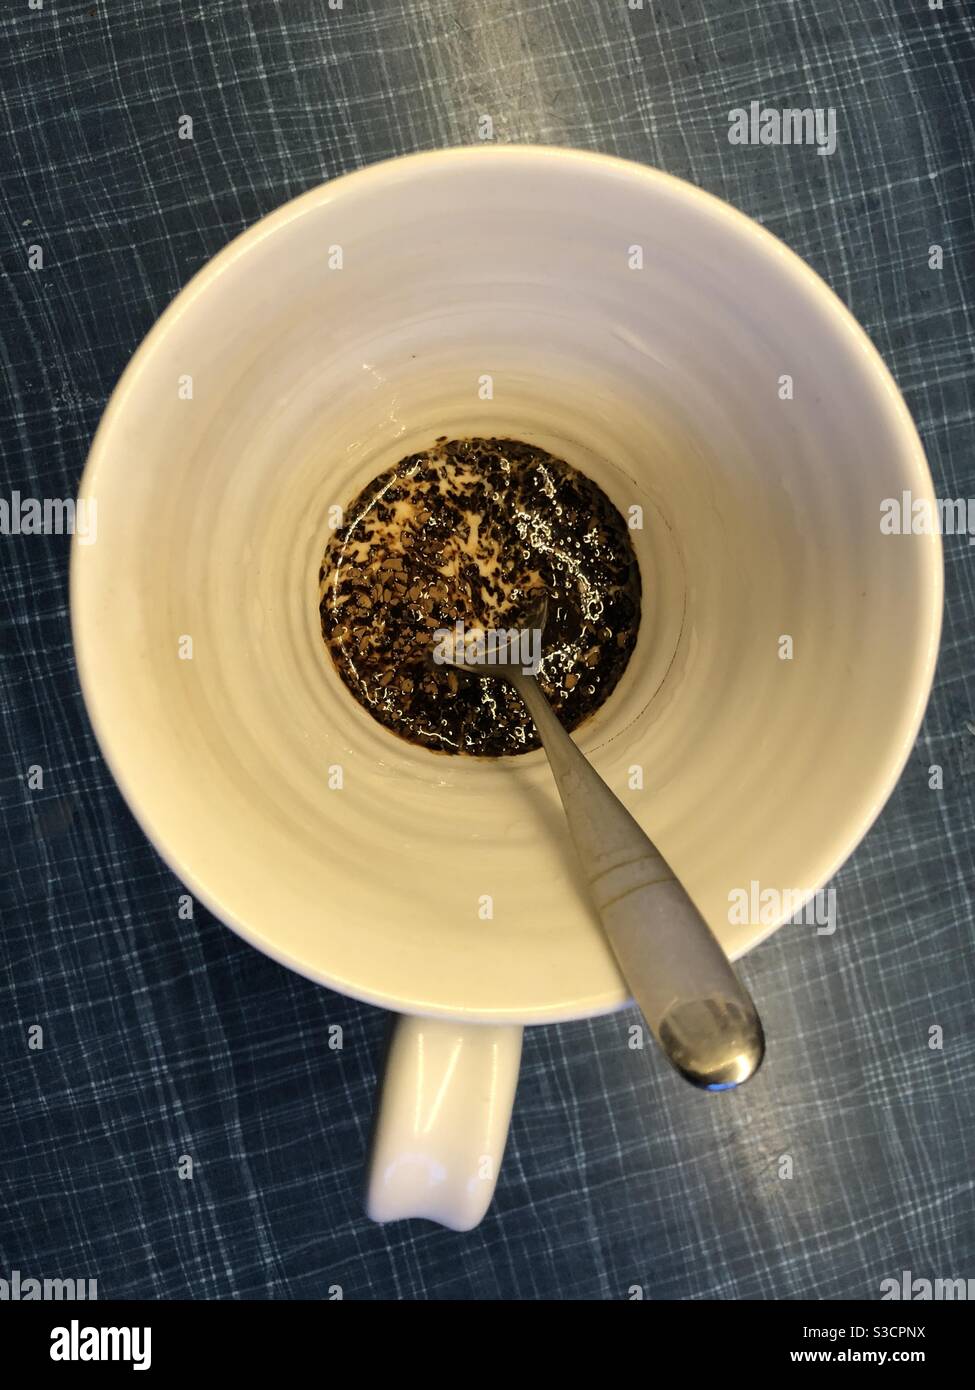 Café instantané avec lait dans une tasse Banque D'Images